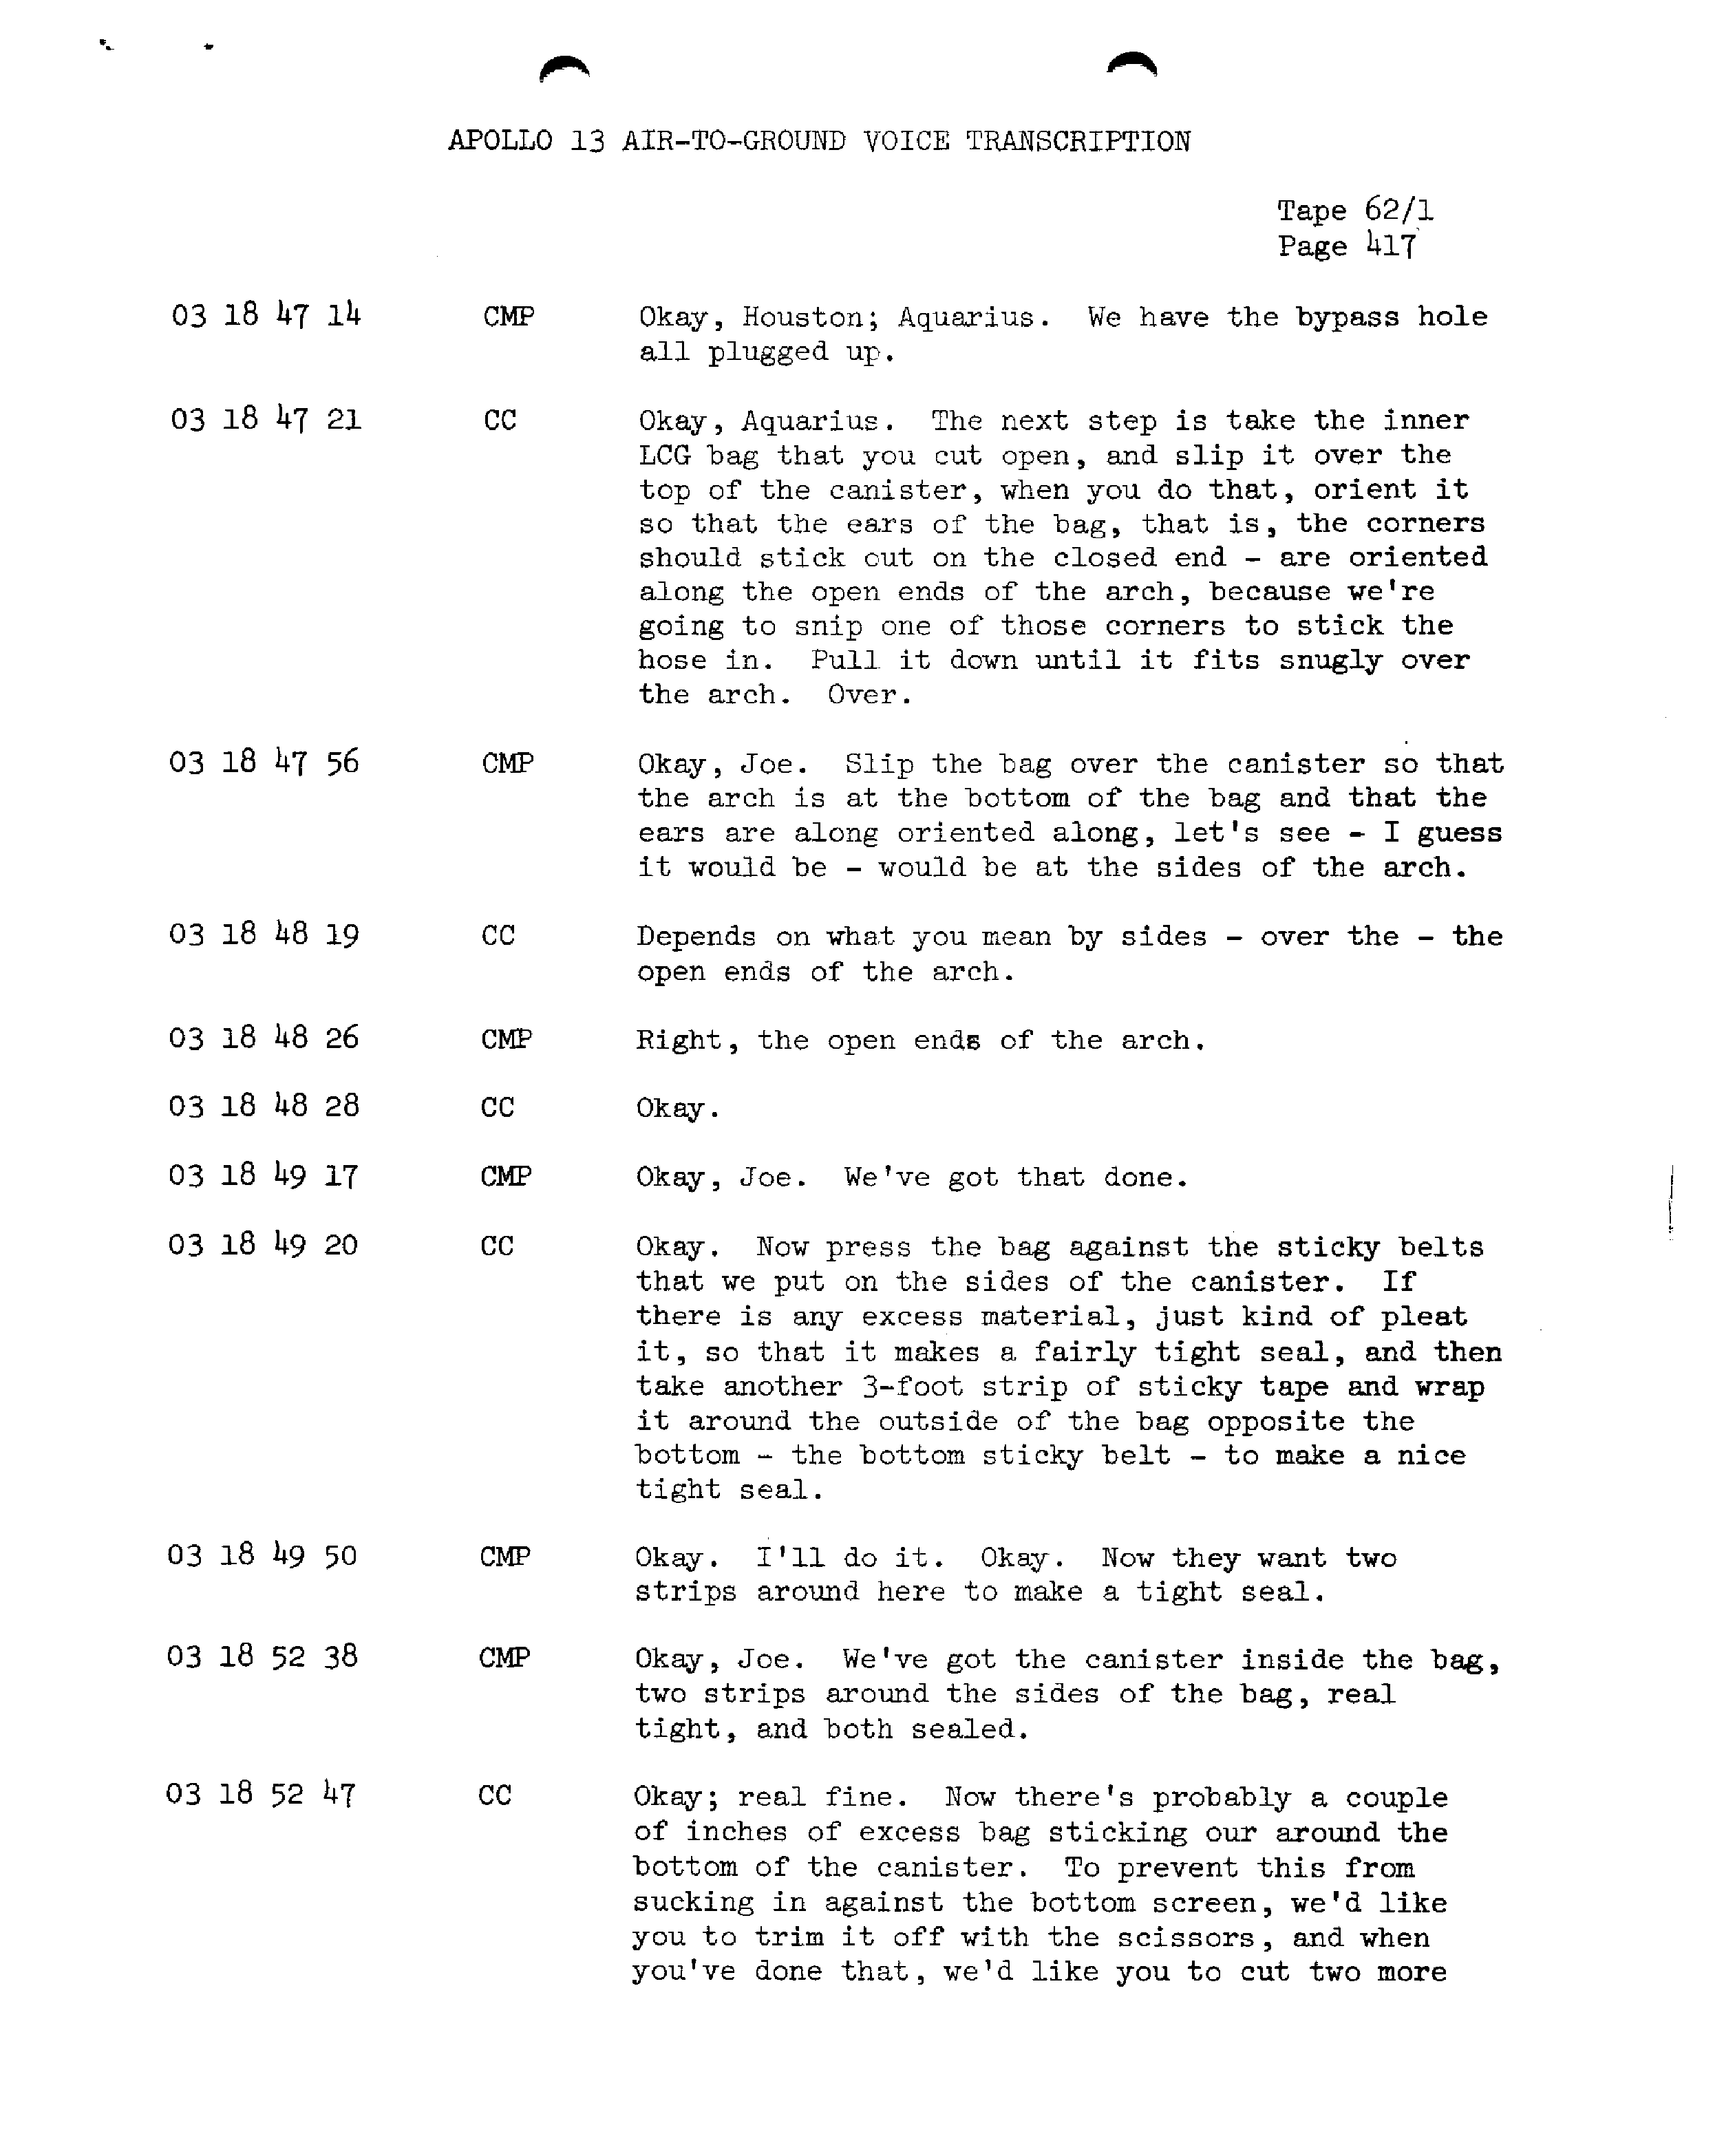 Page 424 of Apollo 13’s original transcript